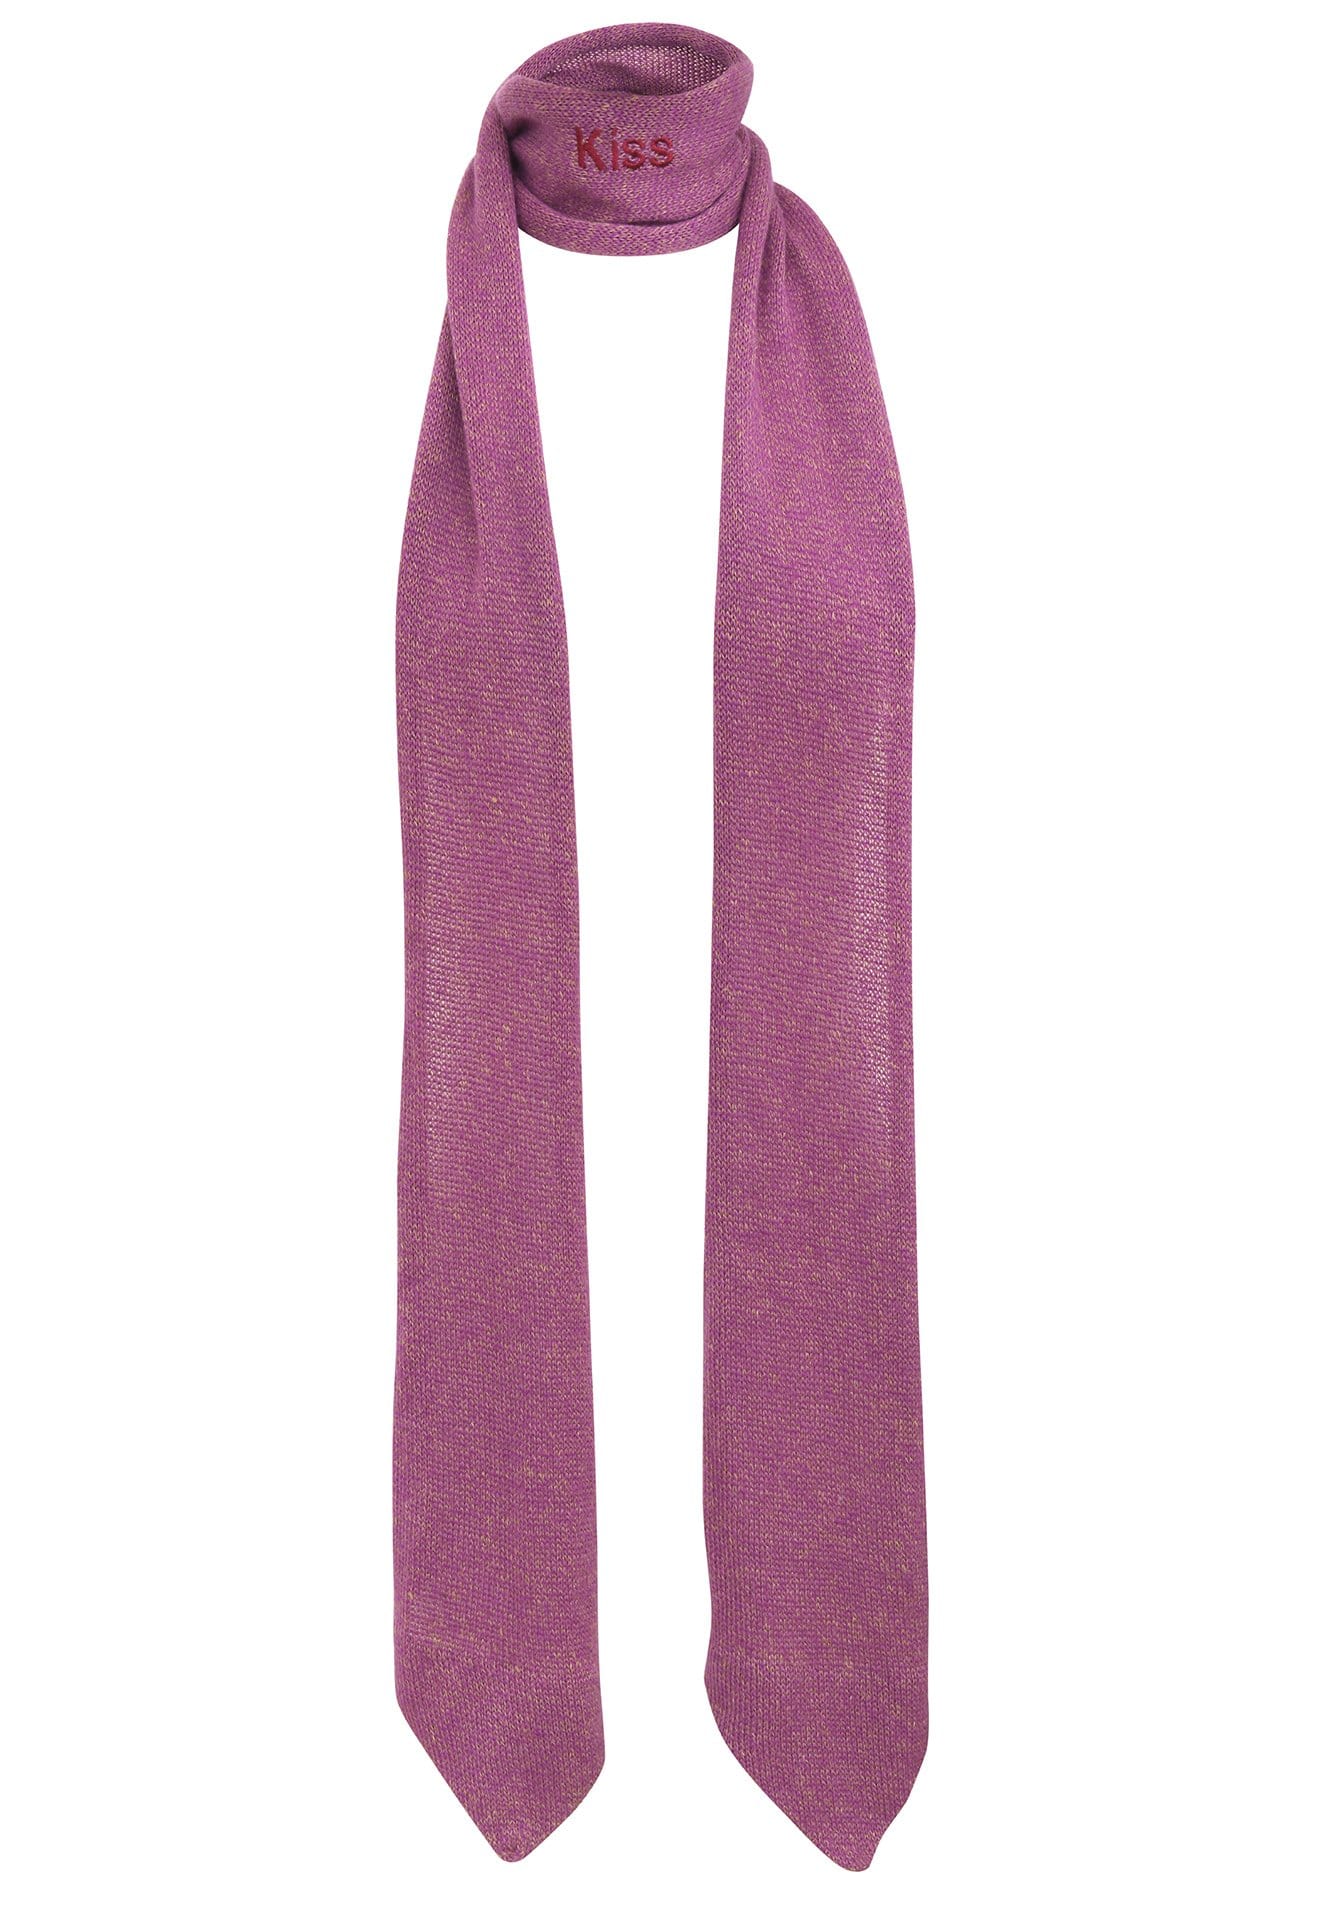 Echarpe violette à bouts cravate avec broderie Kiss tricotée en France 58% cachemire 42% lin